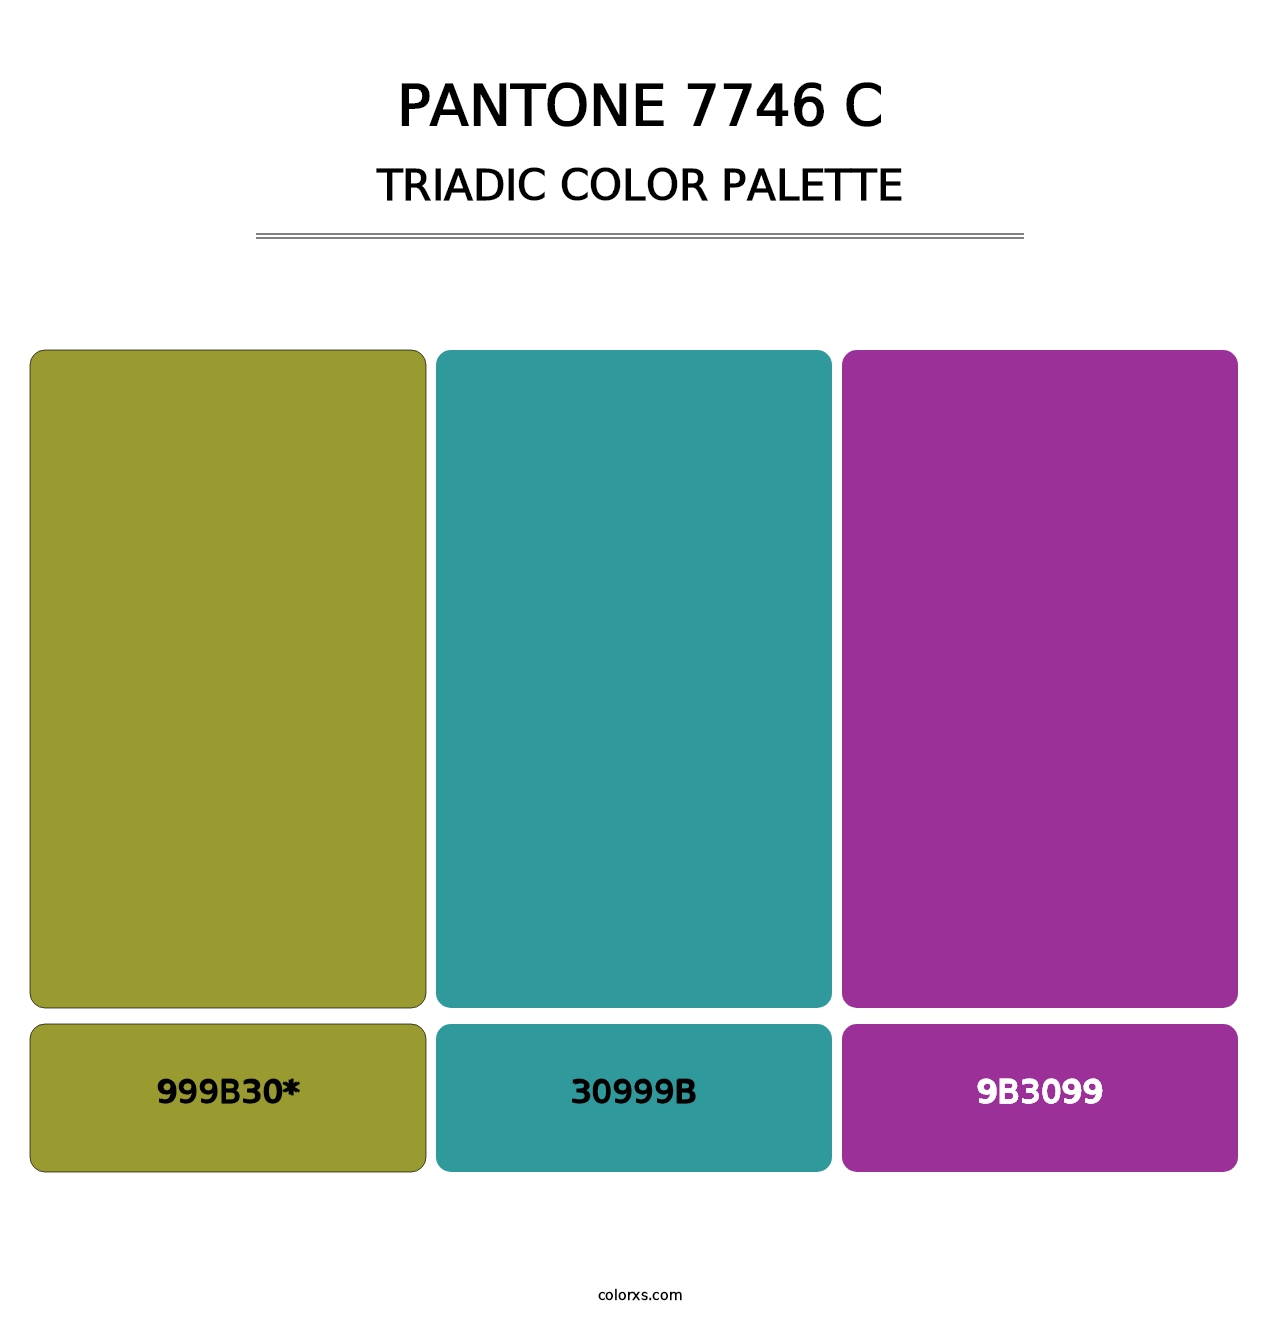 PANTONE 7746 C - Triadic Color Palette